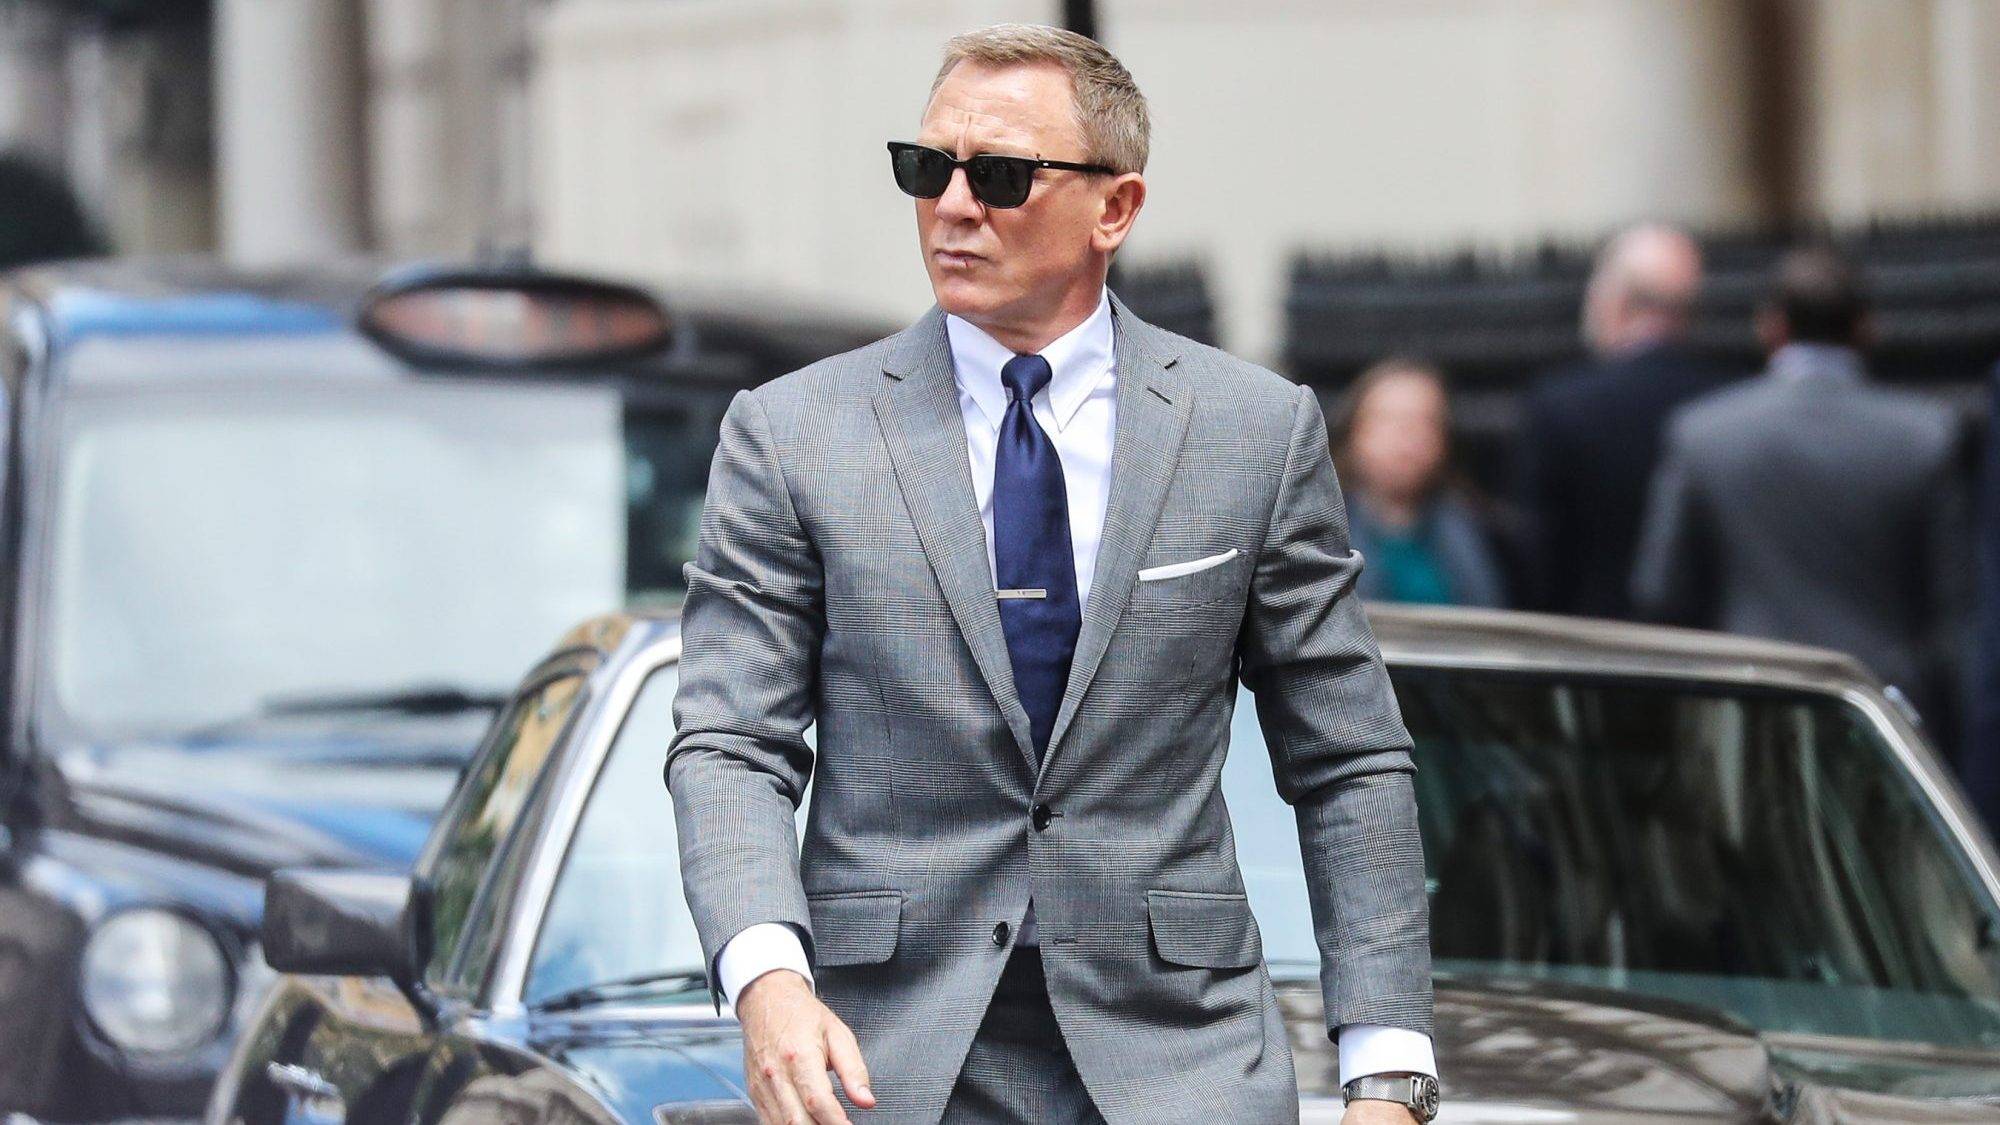 007无暇赴死詹姆斯邦德时代的完美结局高质量男性的穿衣教科书